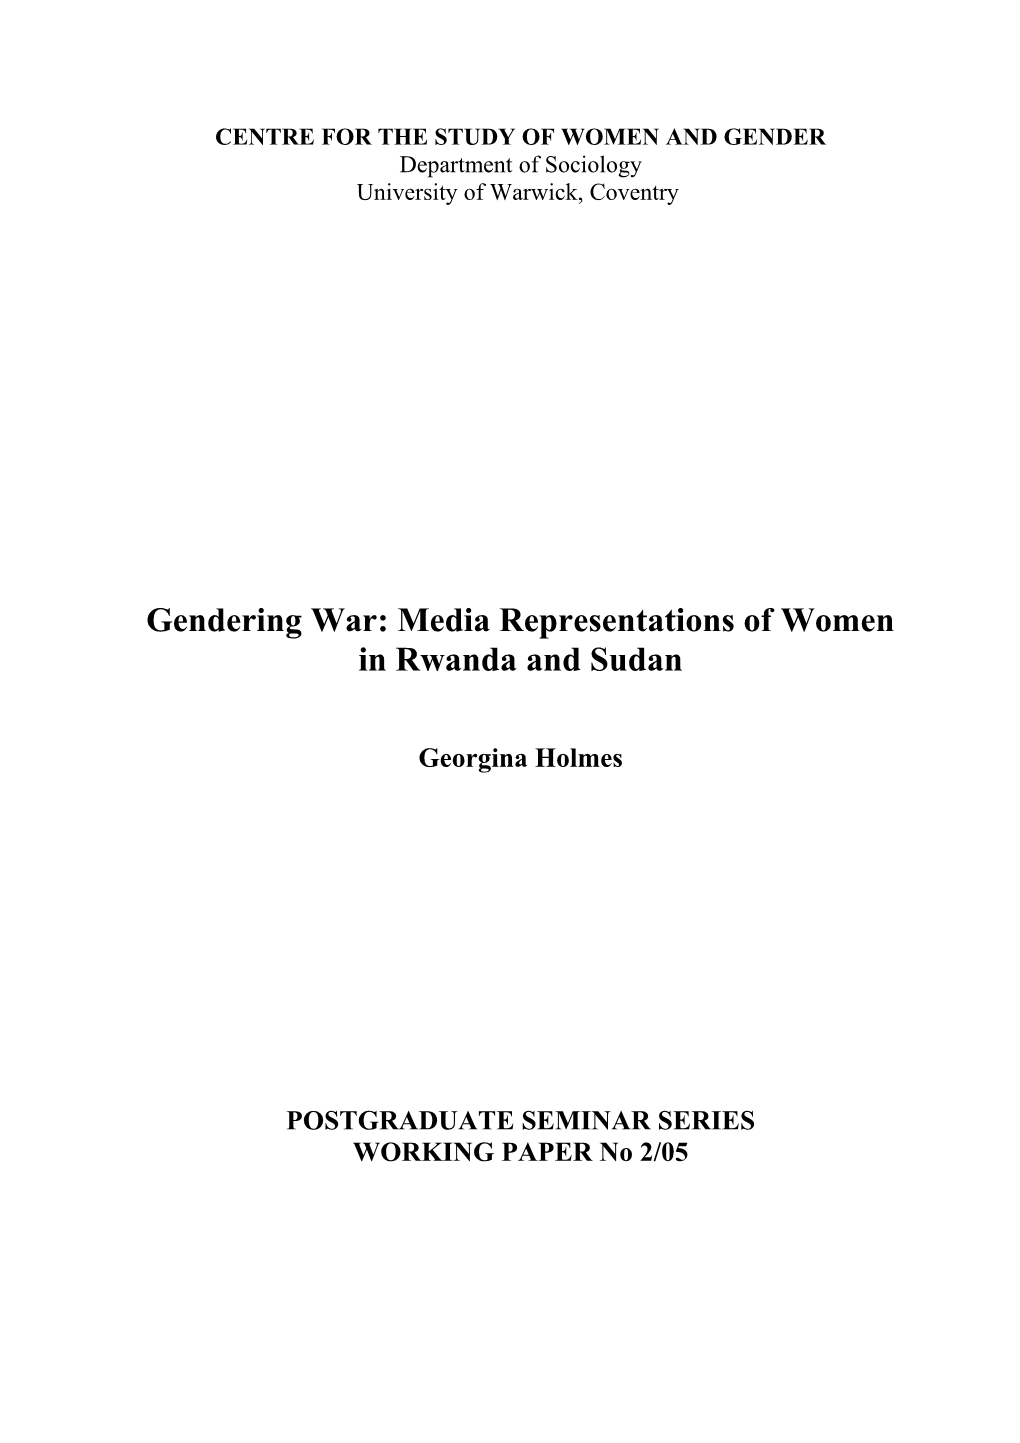 Gendering War: Media Representations of Women in Rwanda and Sudan